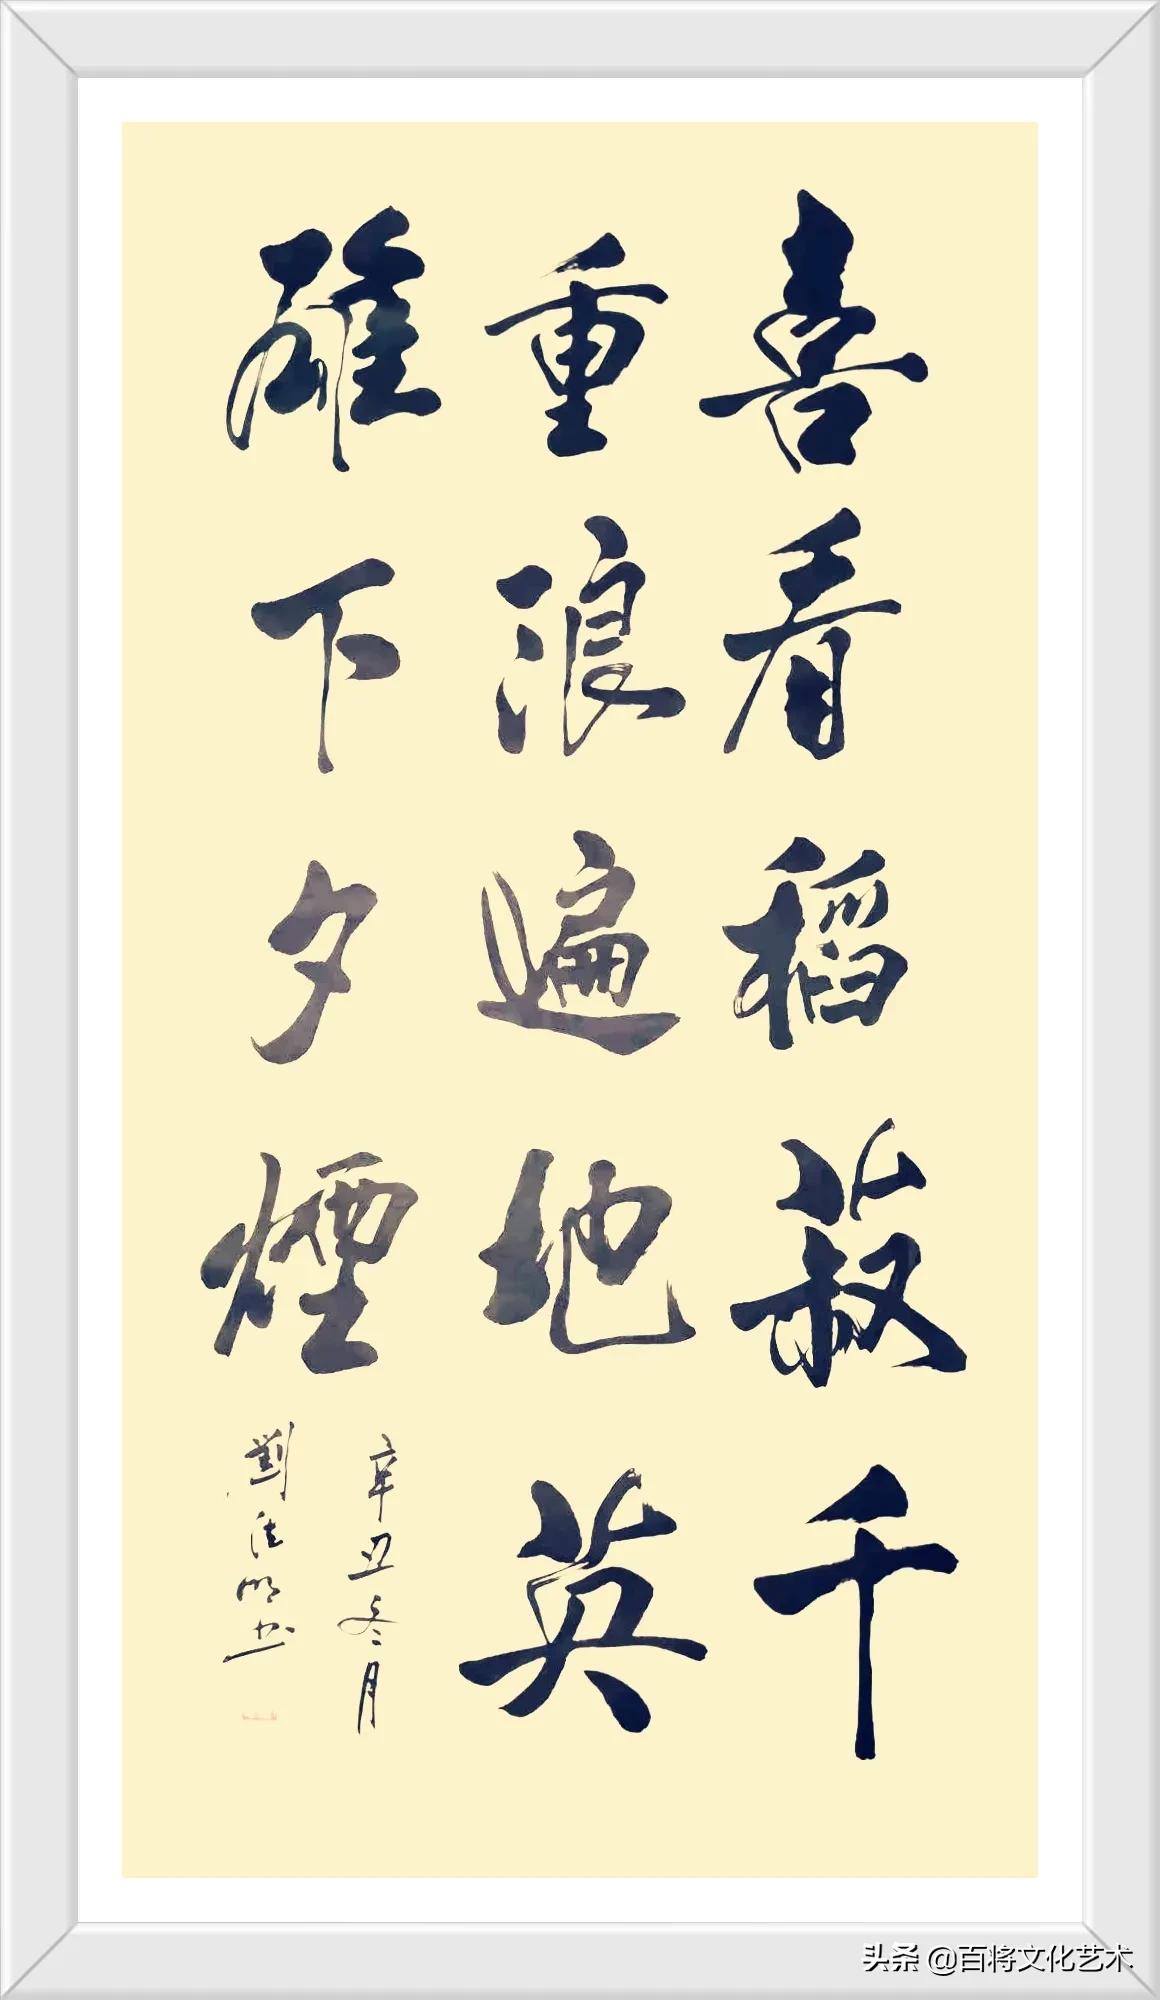 「百将文化」书法 | 12月26日纪念伟大领袖毛主席诞辰128周年